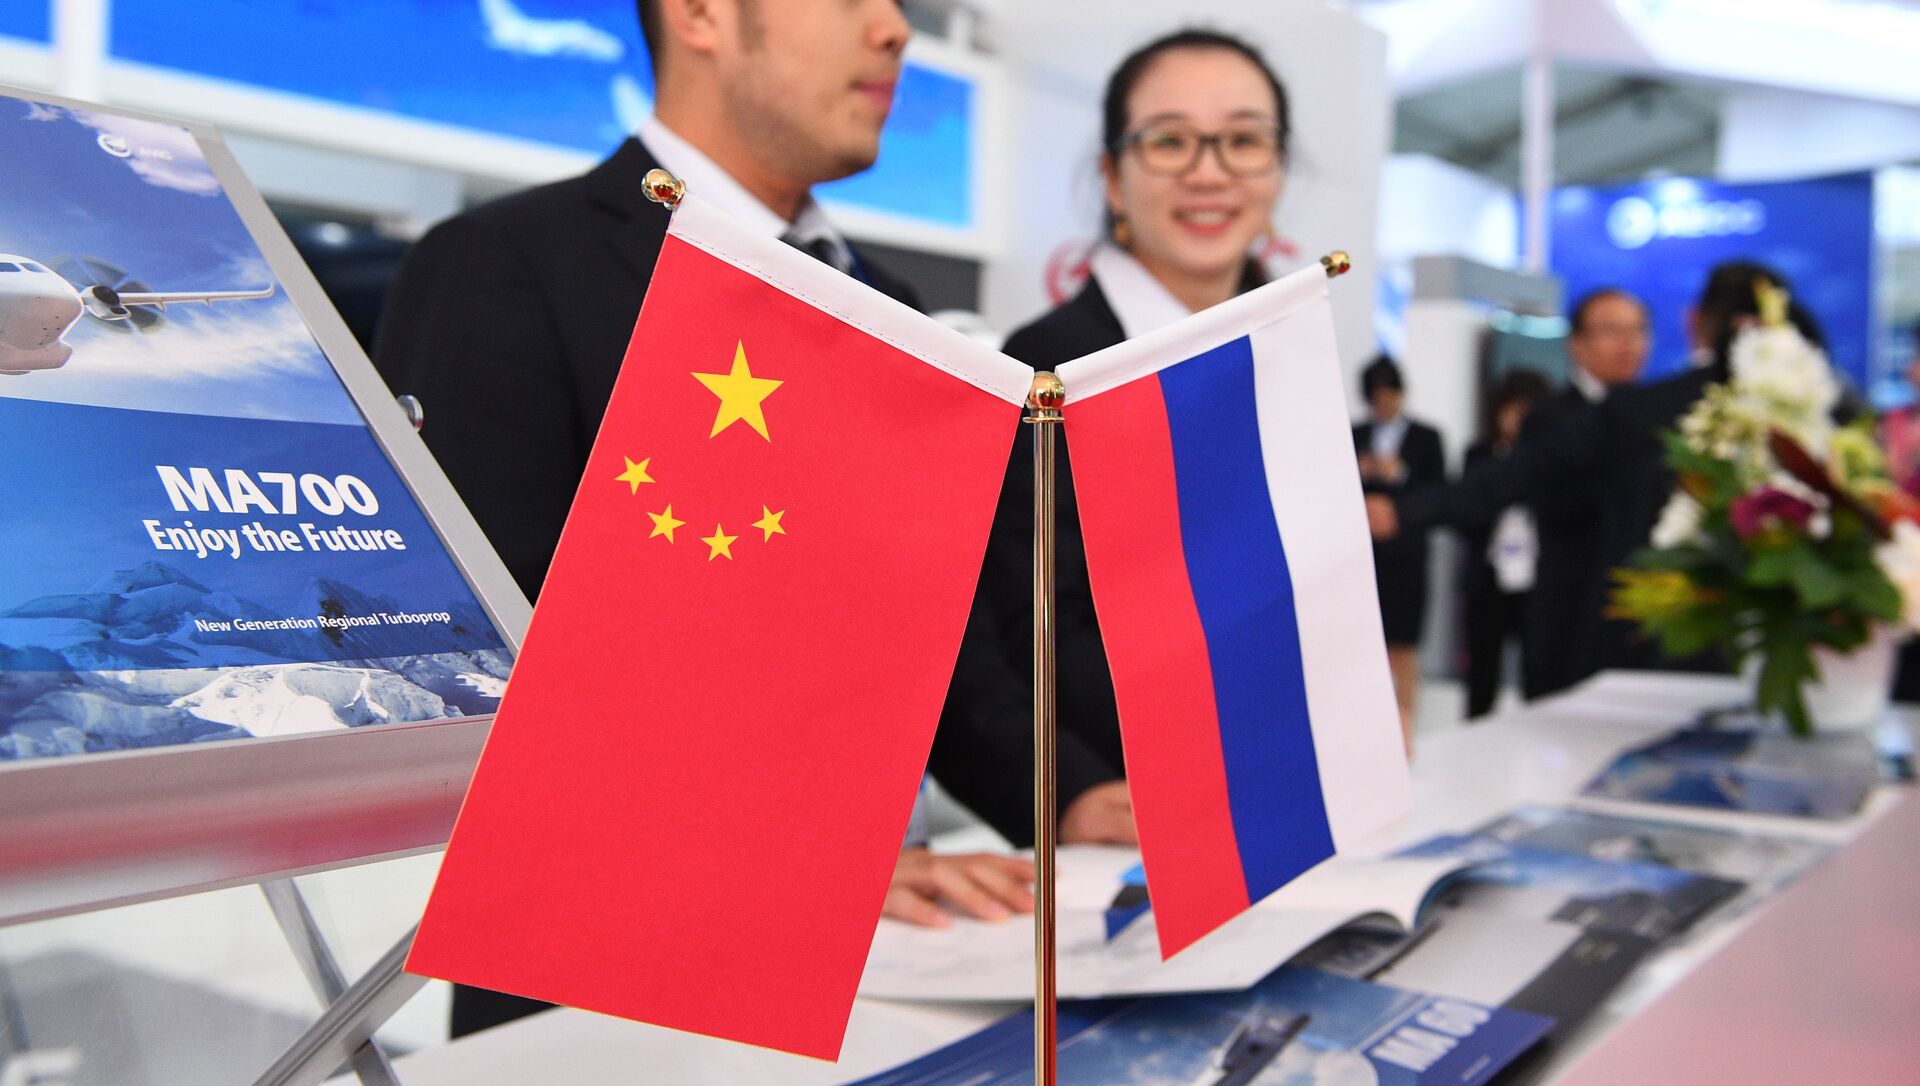 Китайский политолог спрогнозировал развитие отношений Москвы и Пекина после выборов в России